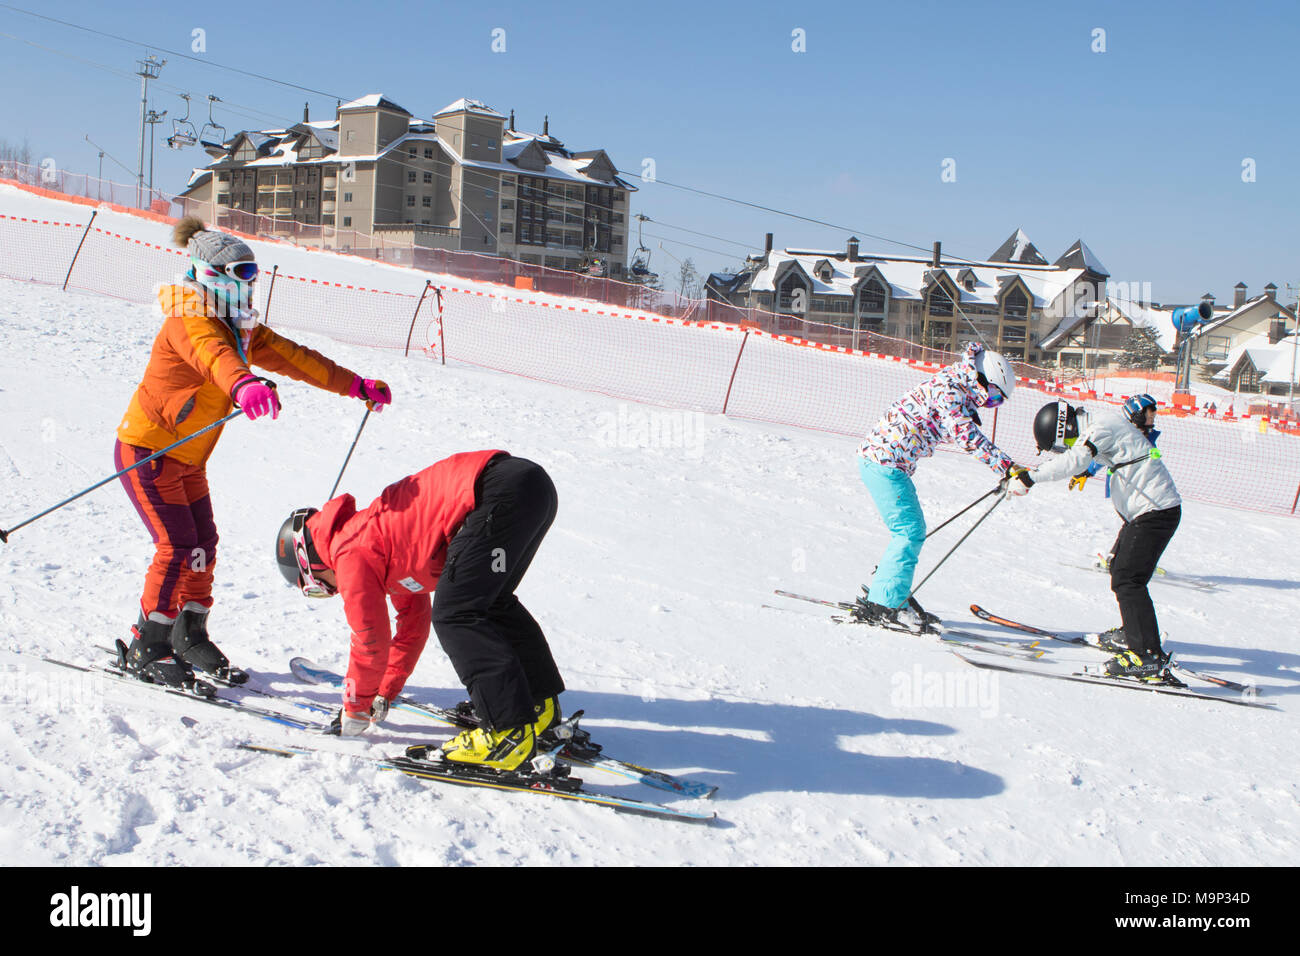 Zwei Frauen werden gelehrt, wie man sich auf einem sanften Skipiste des Alpensia Resort in der Gangwon-do zu Ski Region von Südkorea. Die alpensia Resort ist ein Skigebiet und eine touristische Attraktion. Es ist auf dem Gebiet der Gemeinde von daegwallyeong-myeon befindet sich in der Grafschaft von Pyeongchang, die Olympischen Winterspiele hosting im Februar 2018. Das Skigebiet ist ca. 2,5 Stunden von Seoul oder Incheon Airport mit dem Auto, überwiegend alle Autobahn. Alpensia hat sechs Pisten für Ski und Snowboard, mit bis zu 1,4 km (0.87 mi) lang, für Anfänger und Fortgeschrittene, und einen Bereich für reserviert Stockfoto